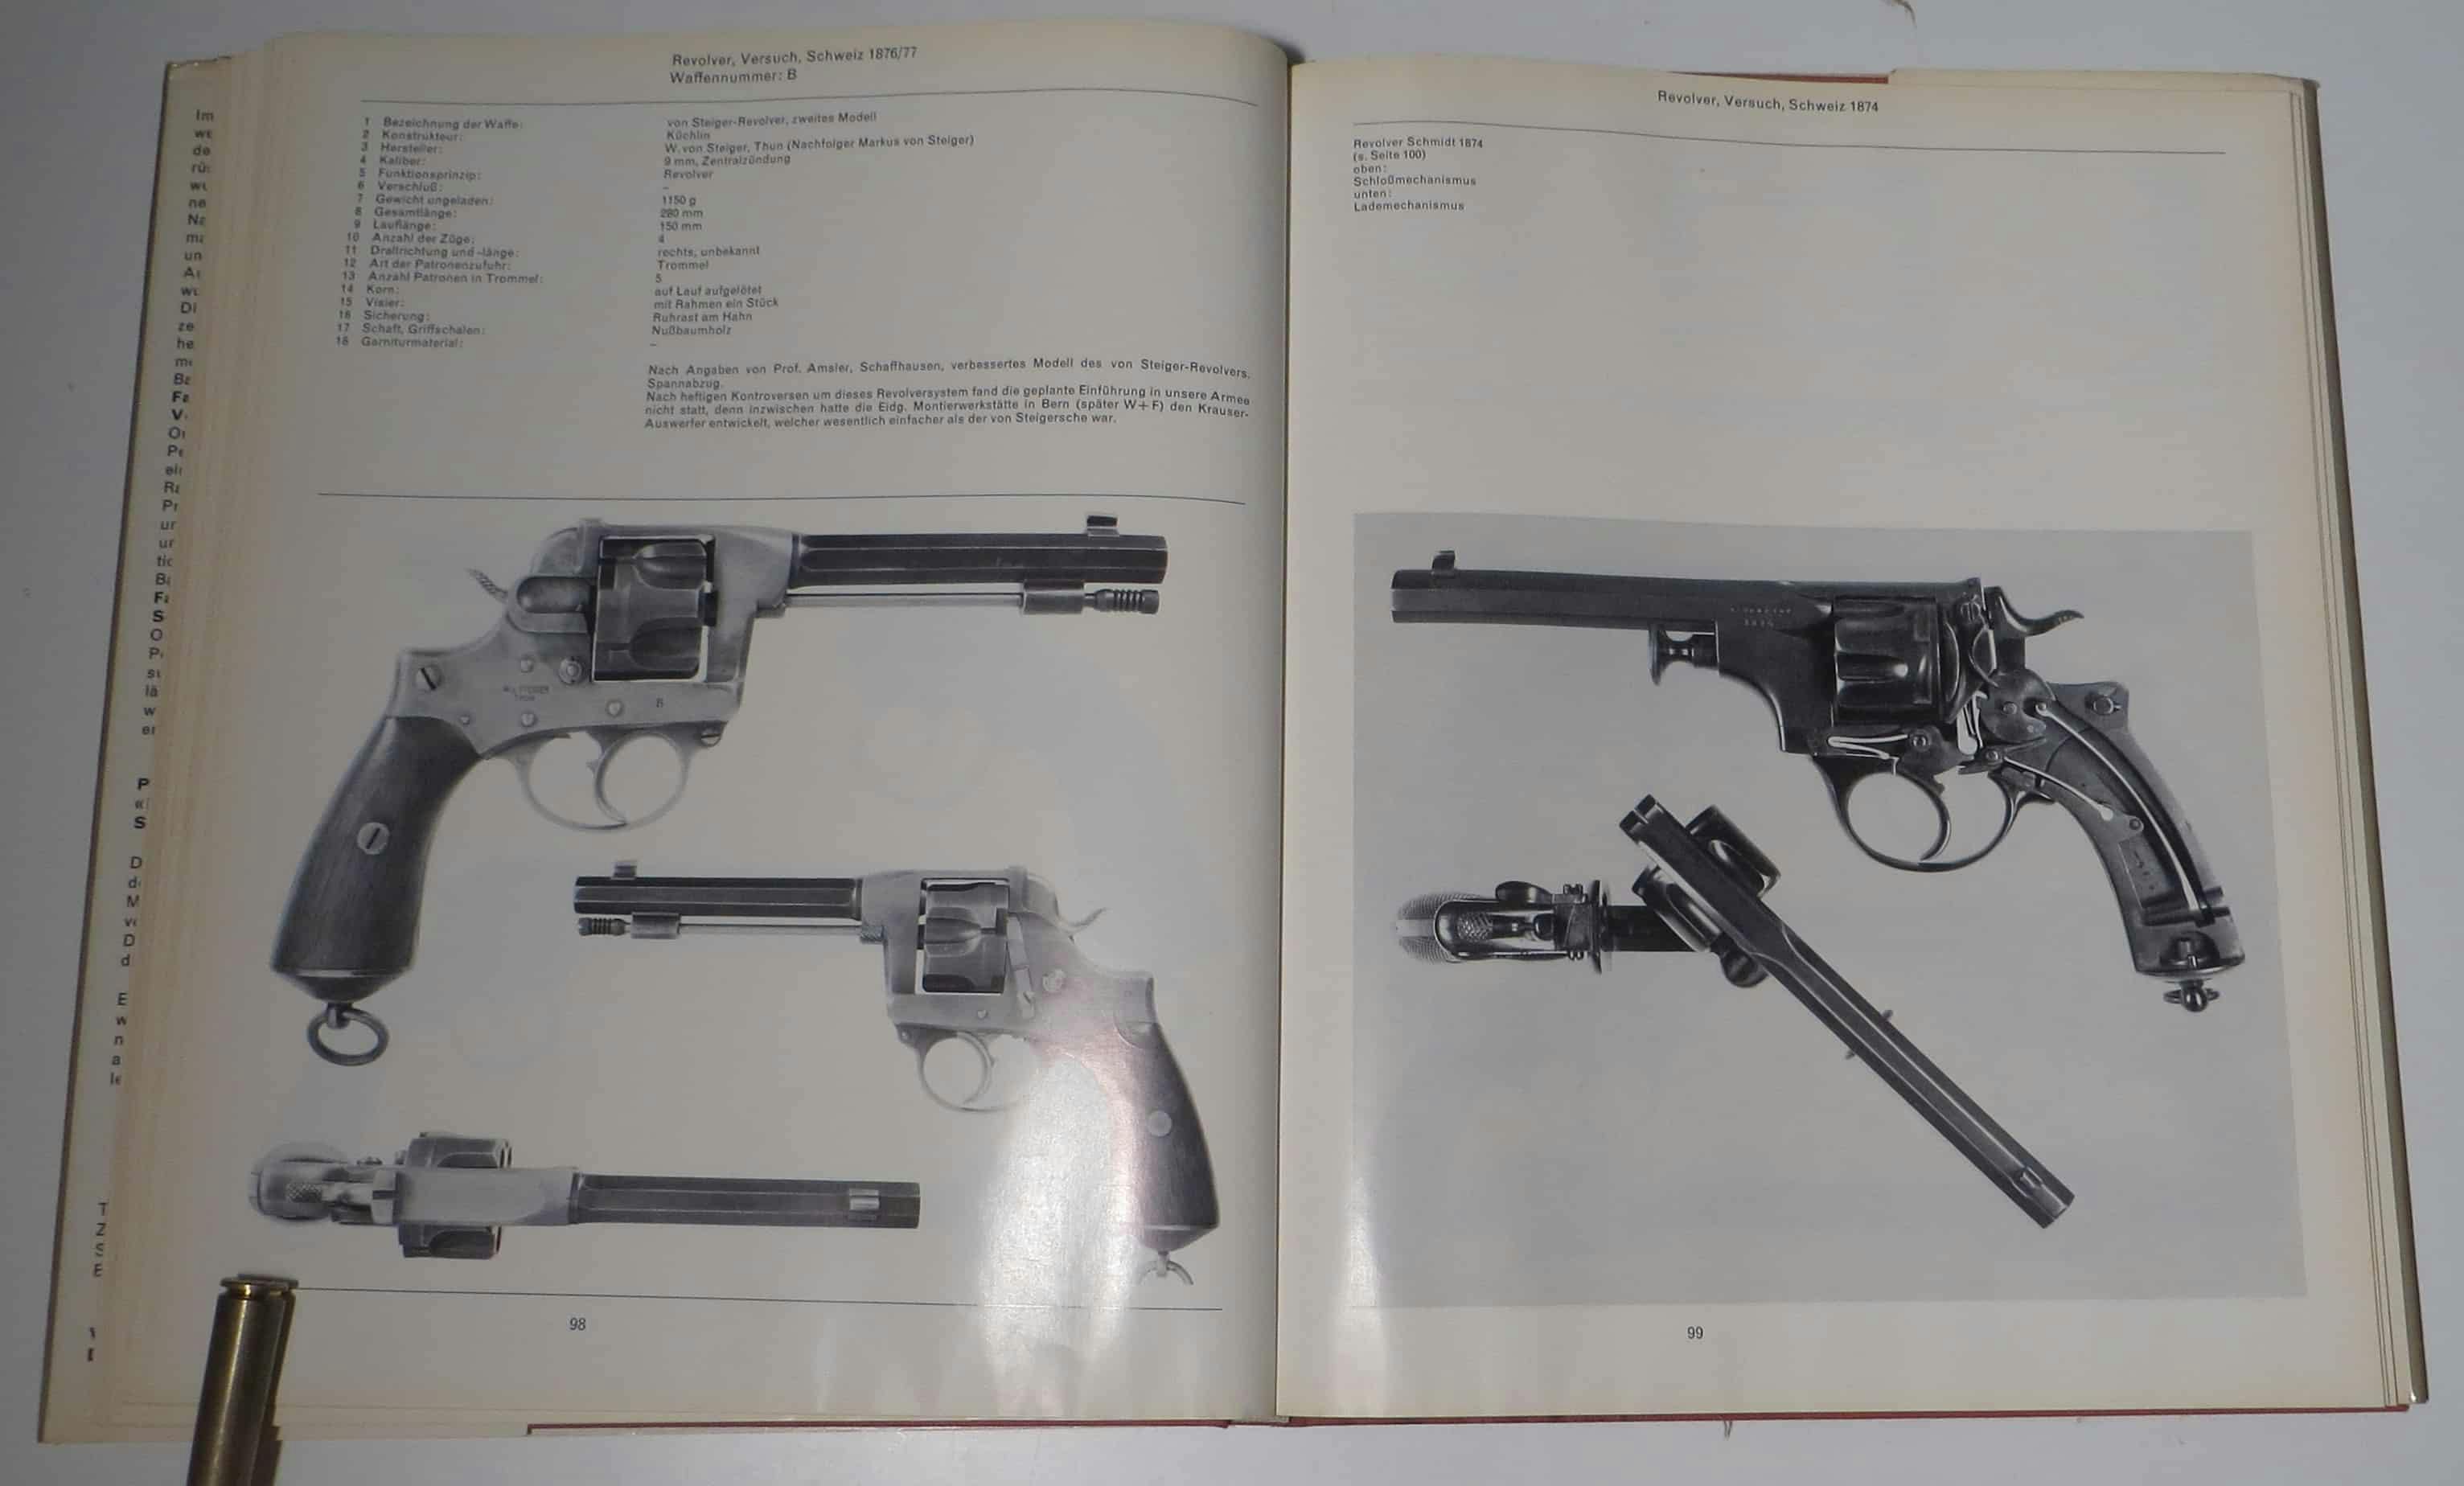 Links der von Steiger-Revolver, rechts Revolver Schmid mit seitlicher Kippladefunktion.